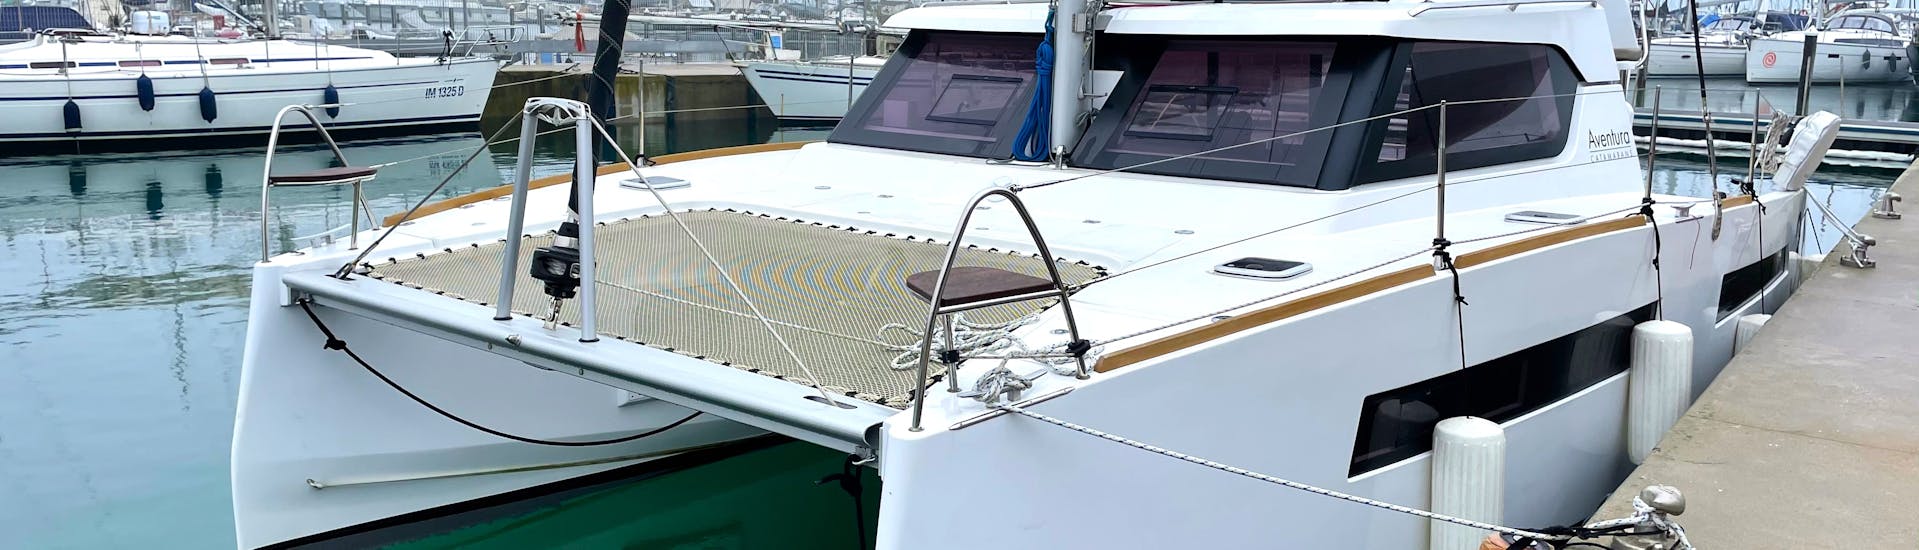 Foto di uno dei catamarani usato per la Gita in catamarano privato alle grotte marine di Polignano a Mare con Rent Me Charter.